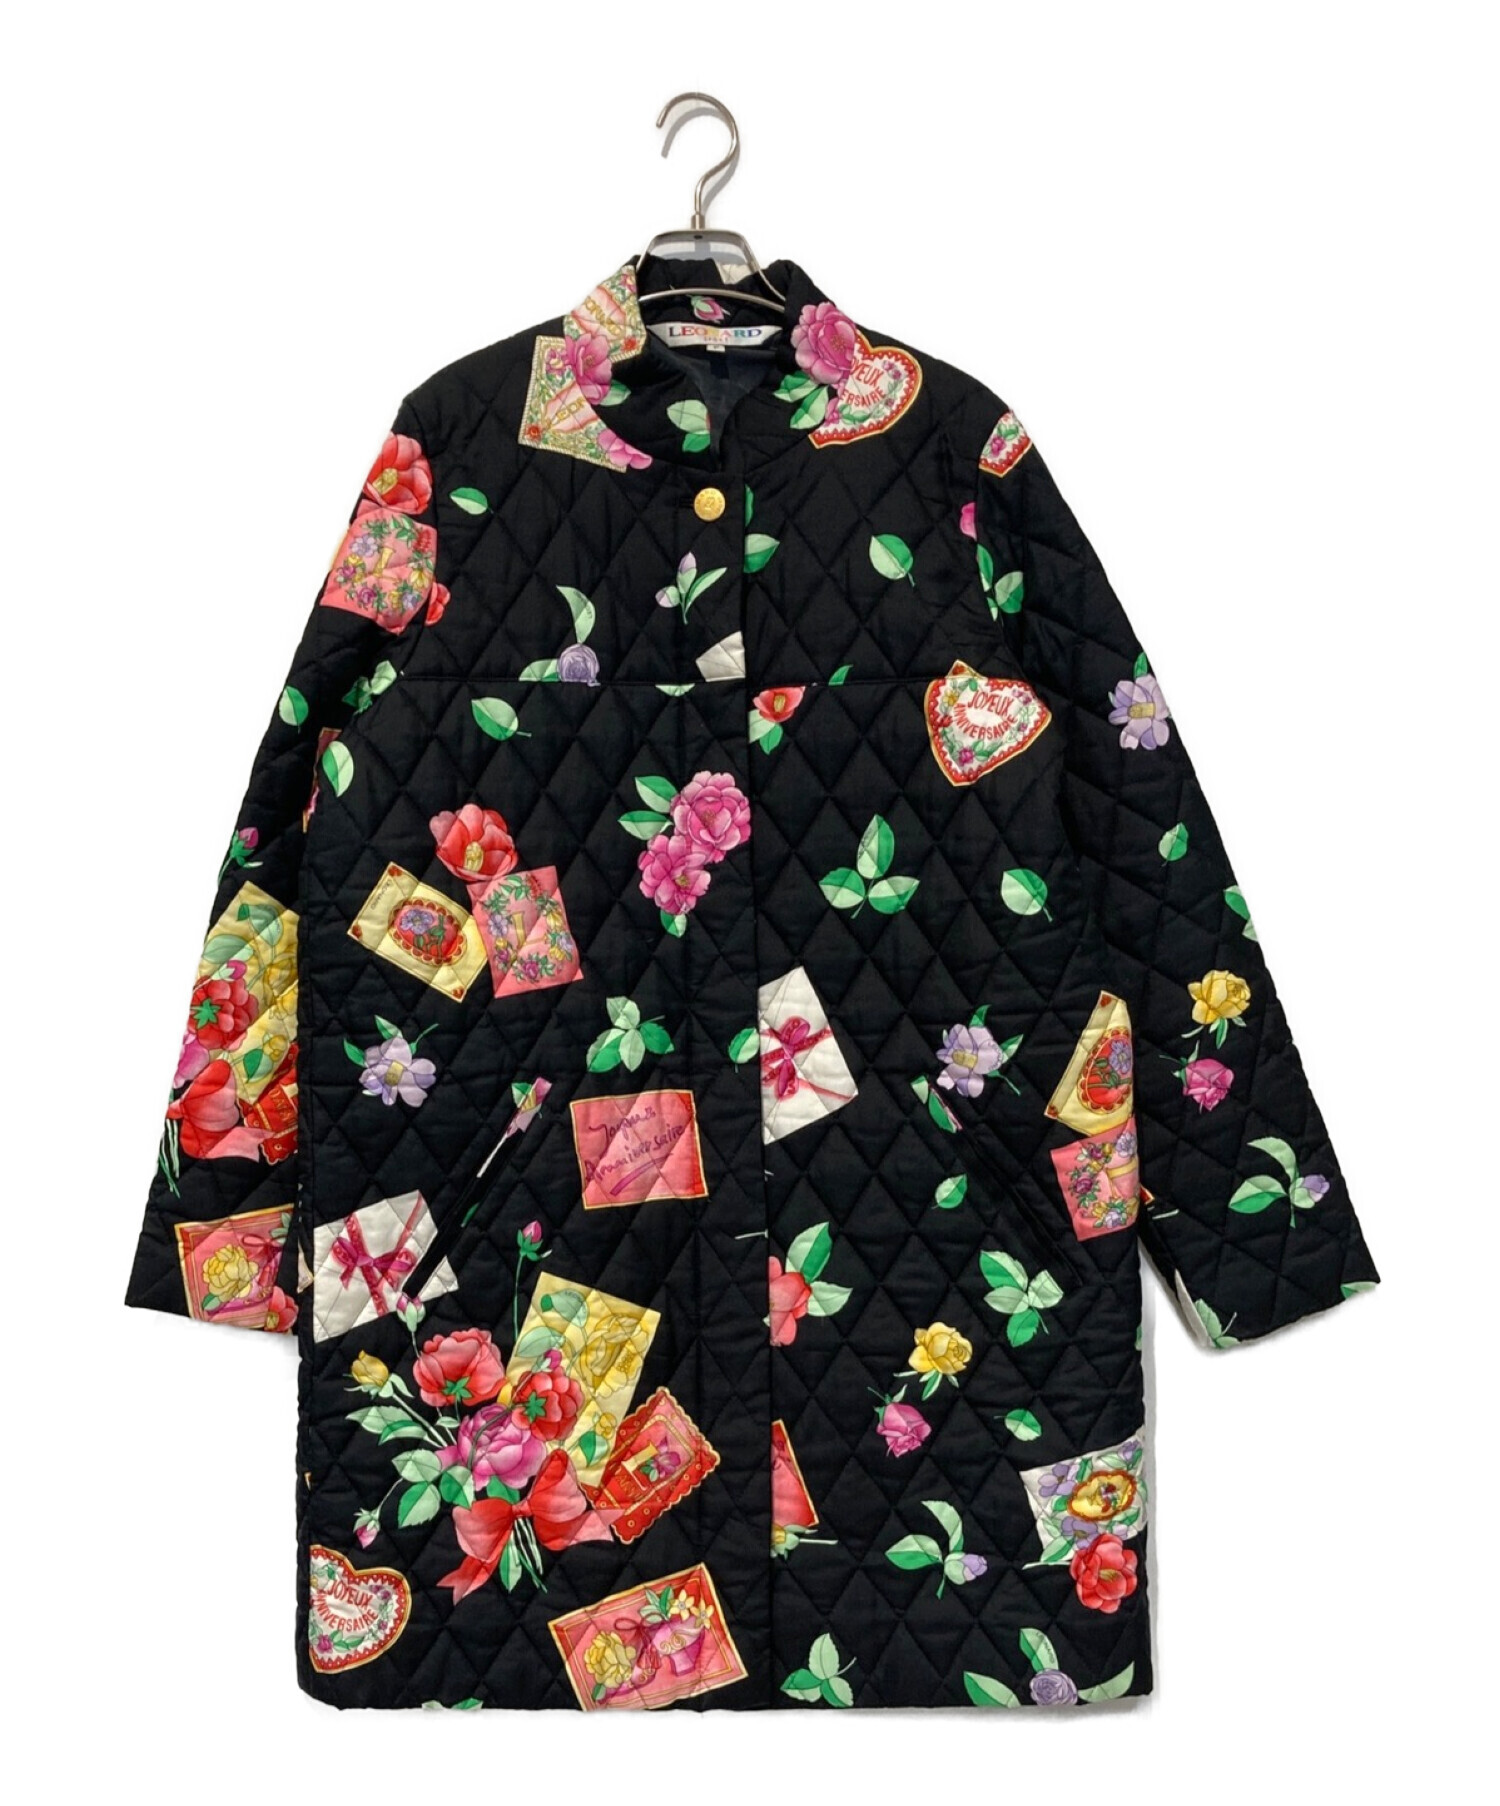 【LEONARD】レオナール 花柄キルティングジャケット